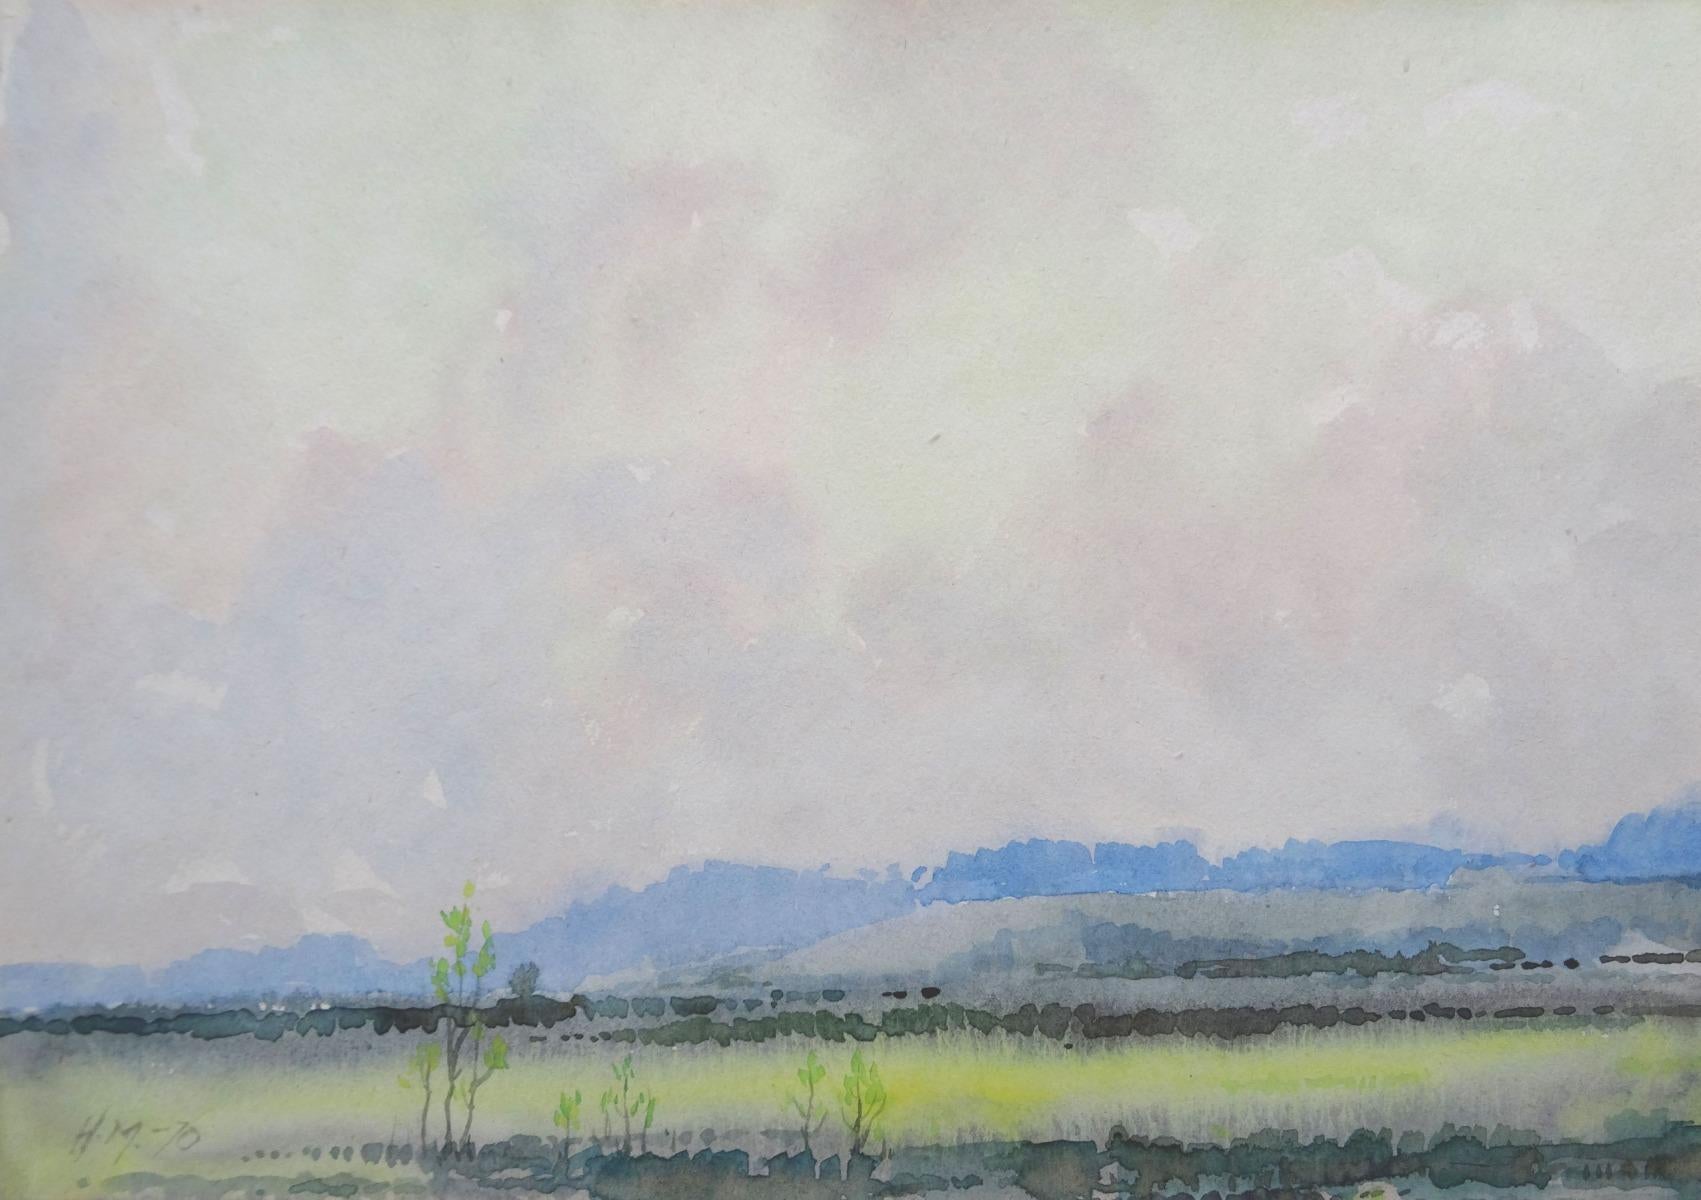 Herberts Mangolds Landscape Art - Landscape  1970, paper/watercolor., 20x28.5 cm